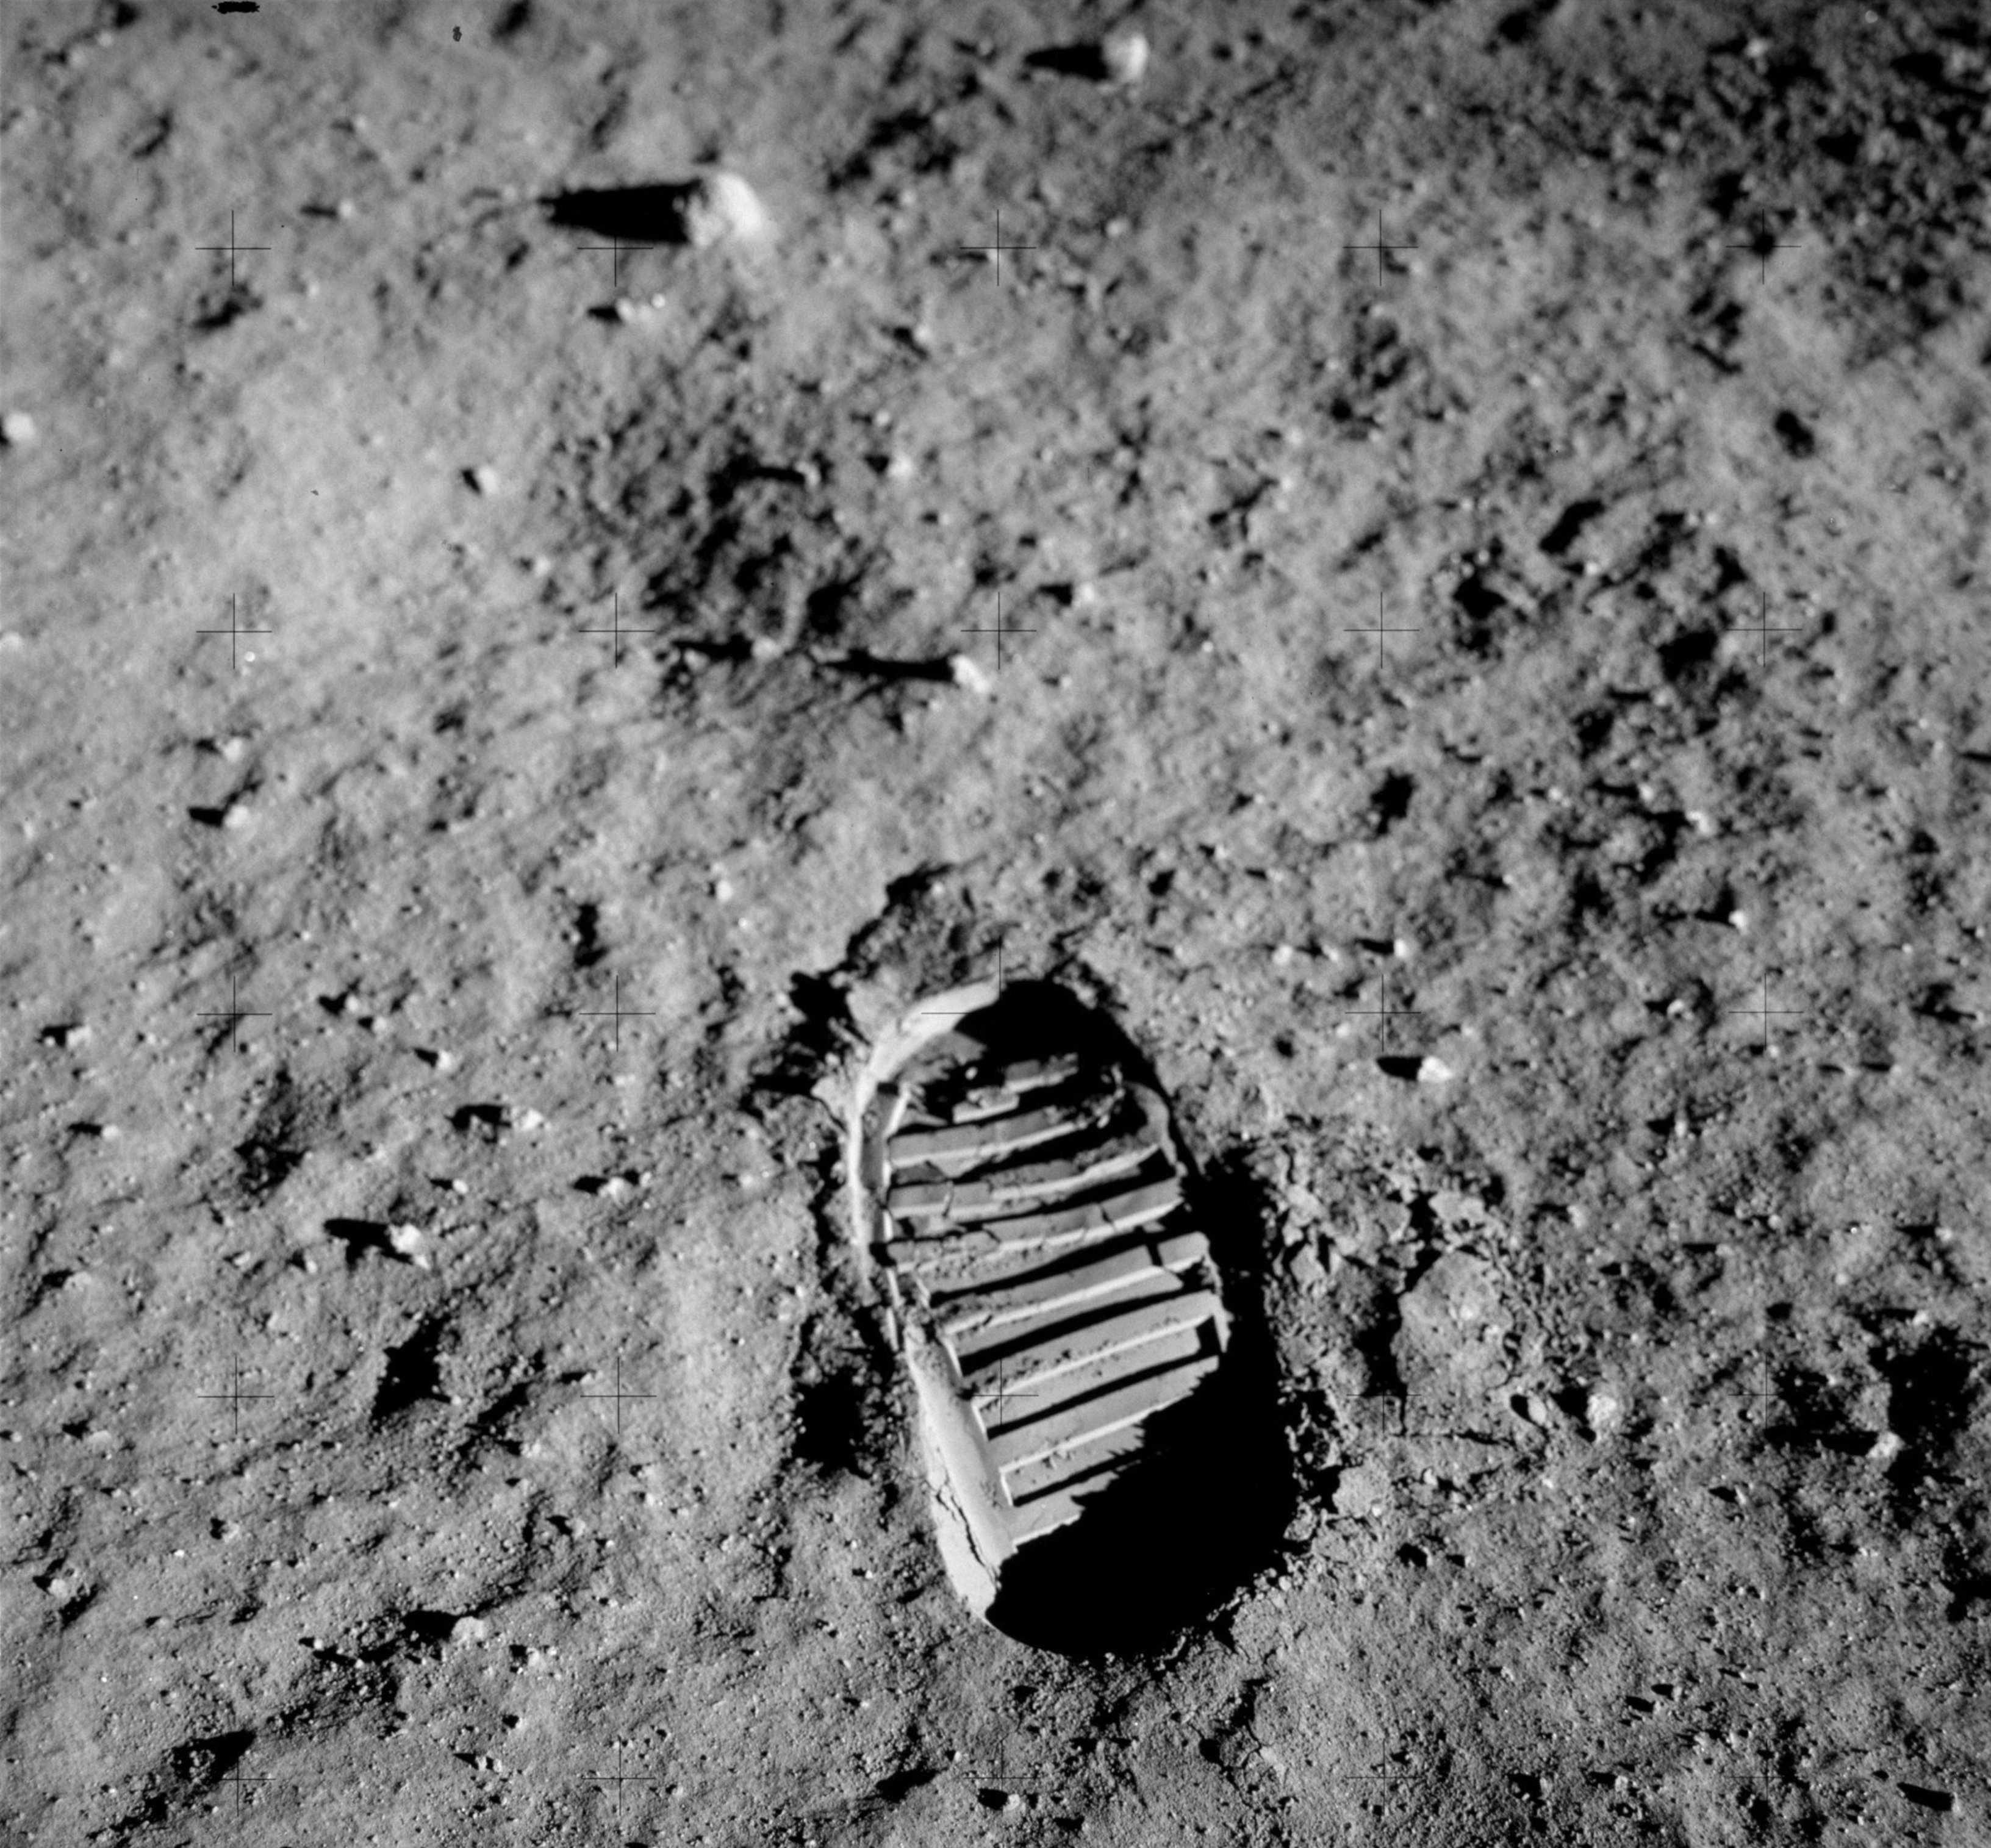 Desmontando las teorías de que el hombre no llegó a la luna hace 50 años